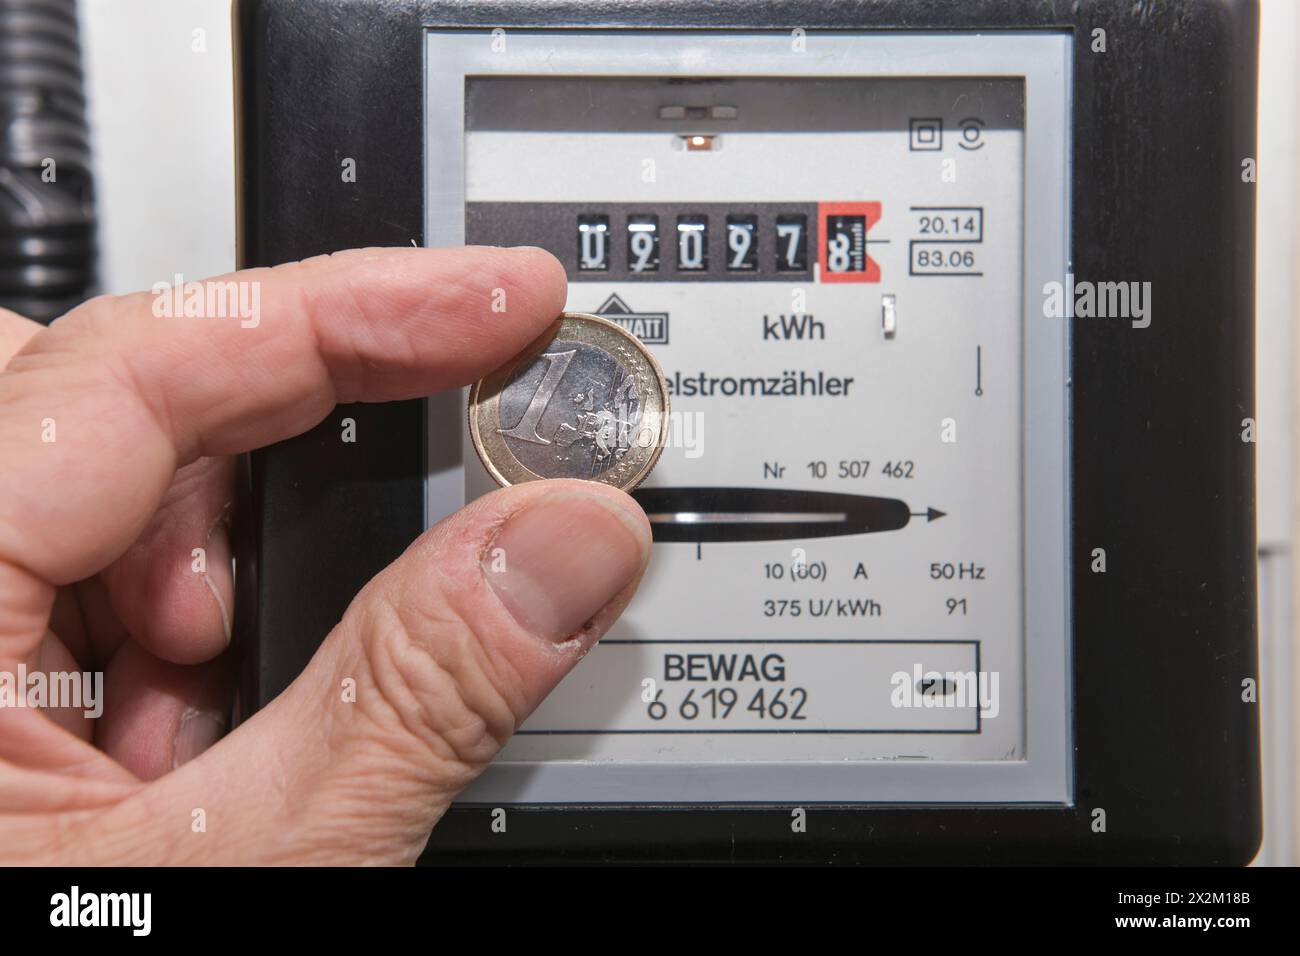 Stromzähler, Symbolfoto Energiekosten, Stromverbrauch, Geld, Euro Foto Stock